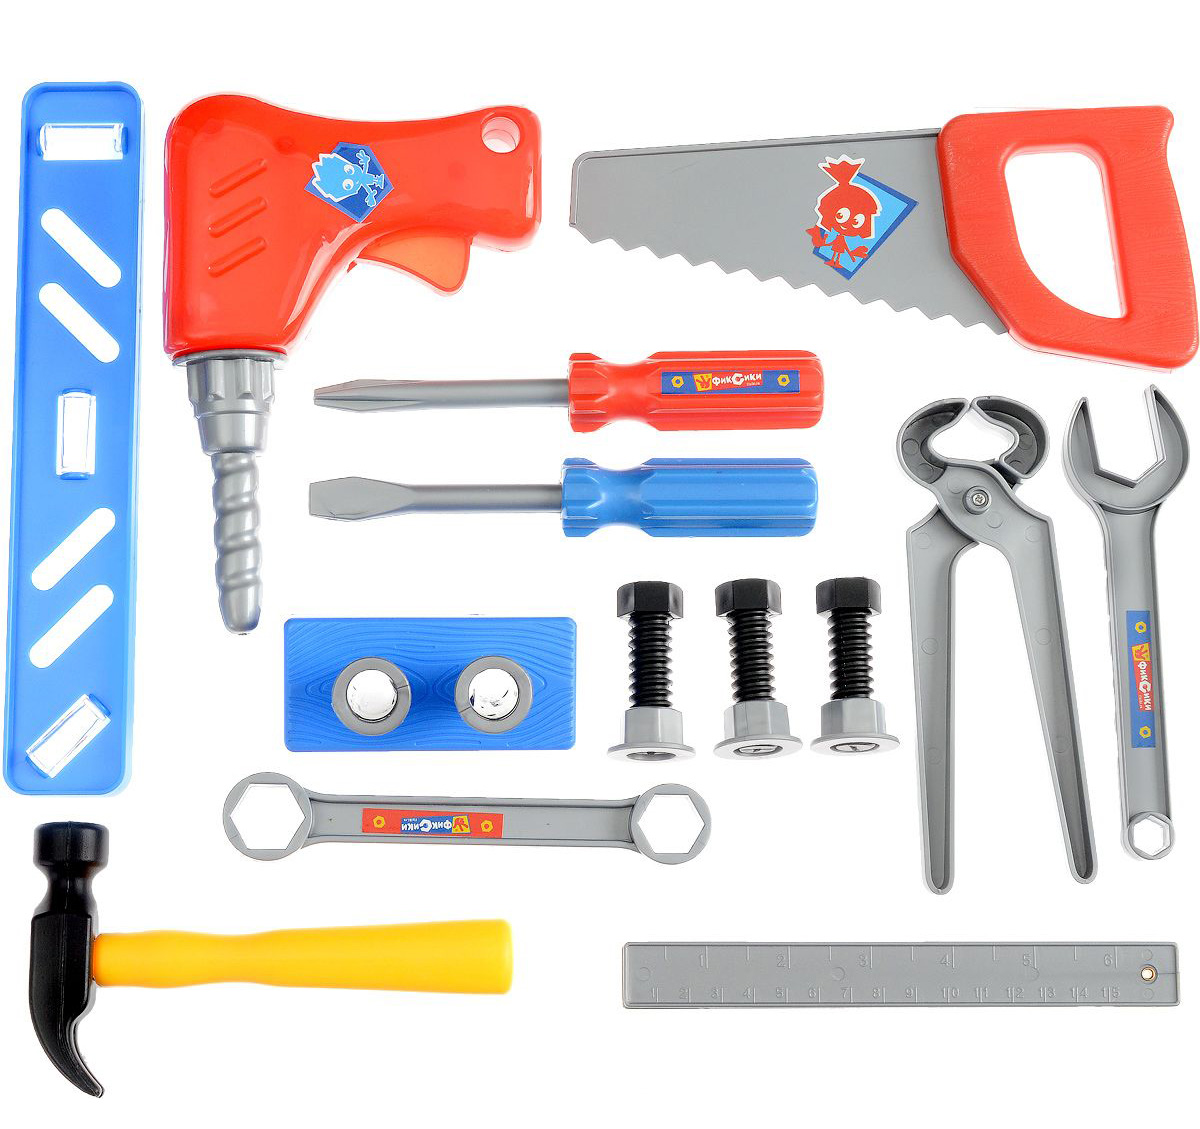 Комплект tools. Набор инструментов строительных Tools арт. 239. Набор игровой слесарный у810. Игрушка набор инструментов g251. Детский строительный набор инструментов.